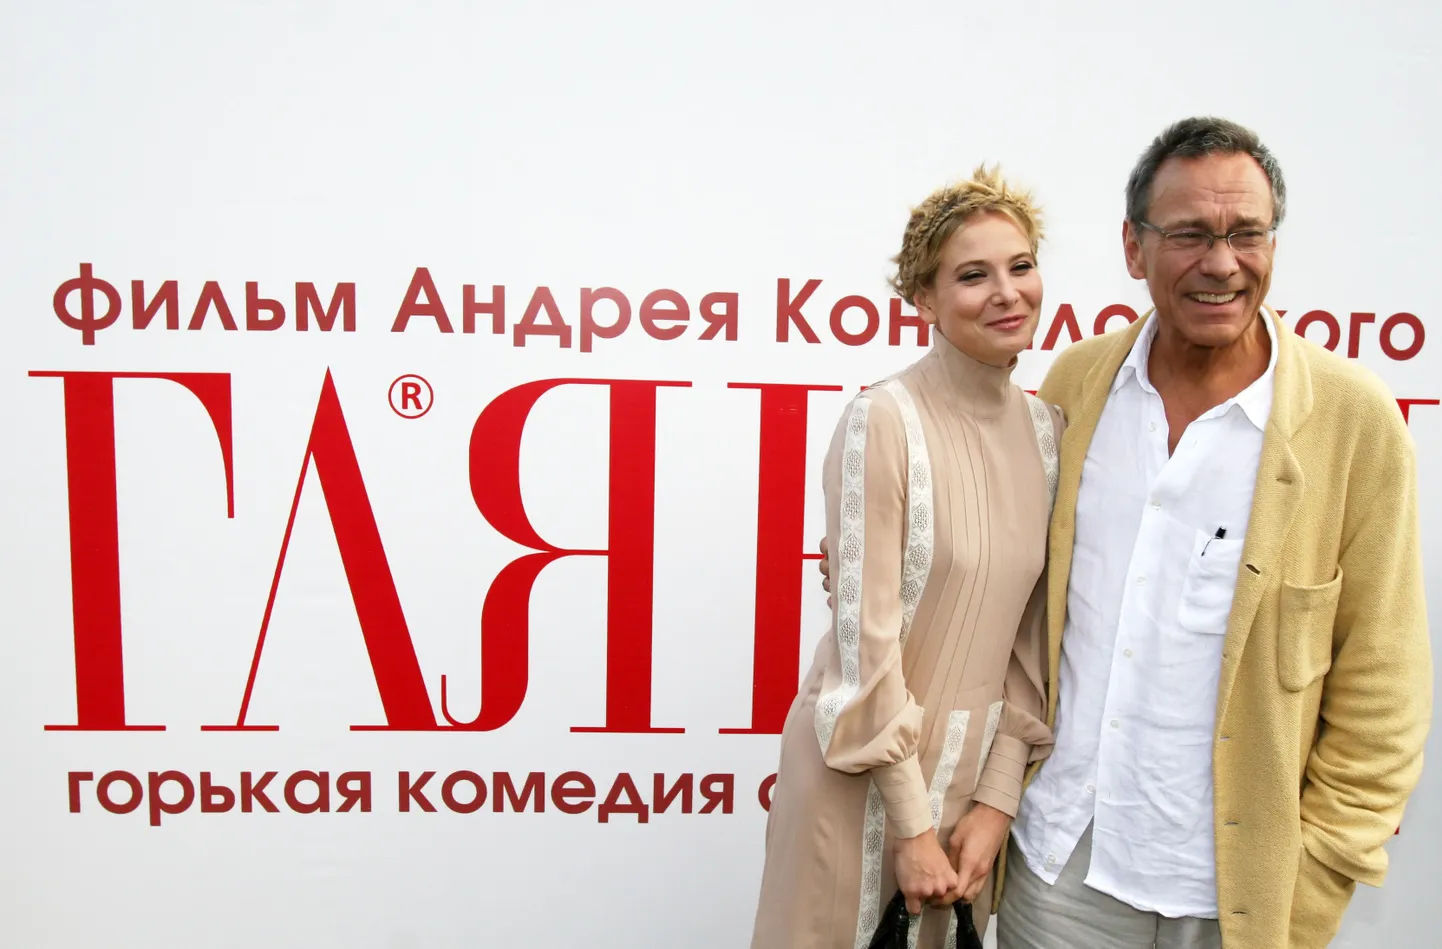 Андрей Кончаловский с супругой Юлией Высоцкой на премьере фильма "Глянец".